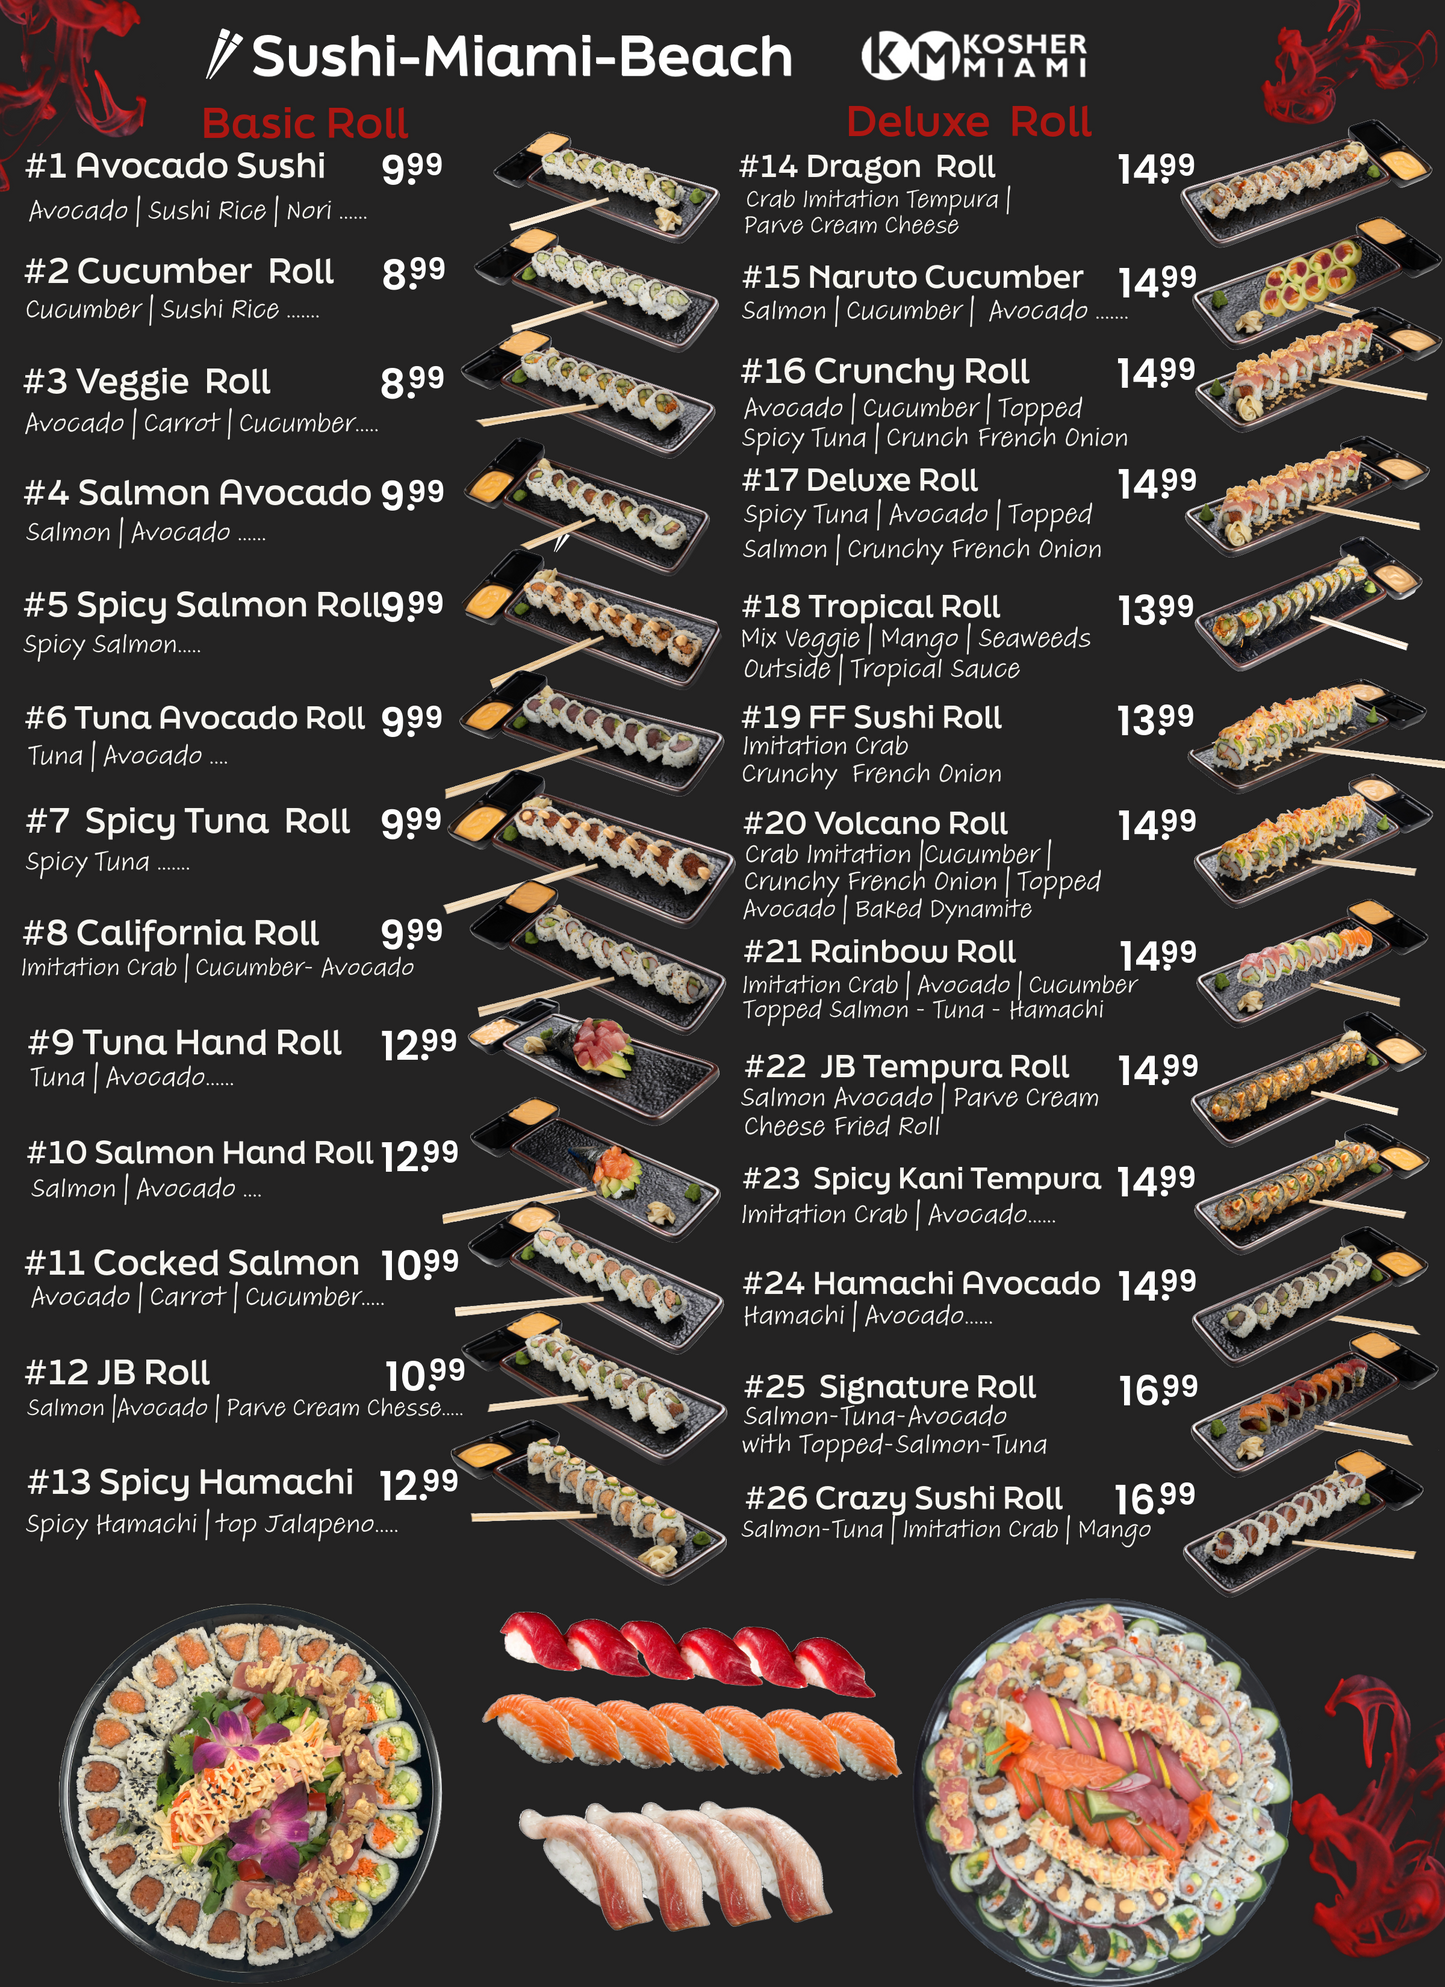 #21 Rainbow Sushi Rolls by Sushi Miami Beach